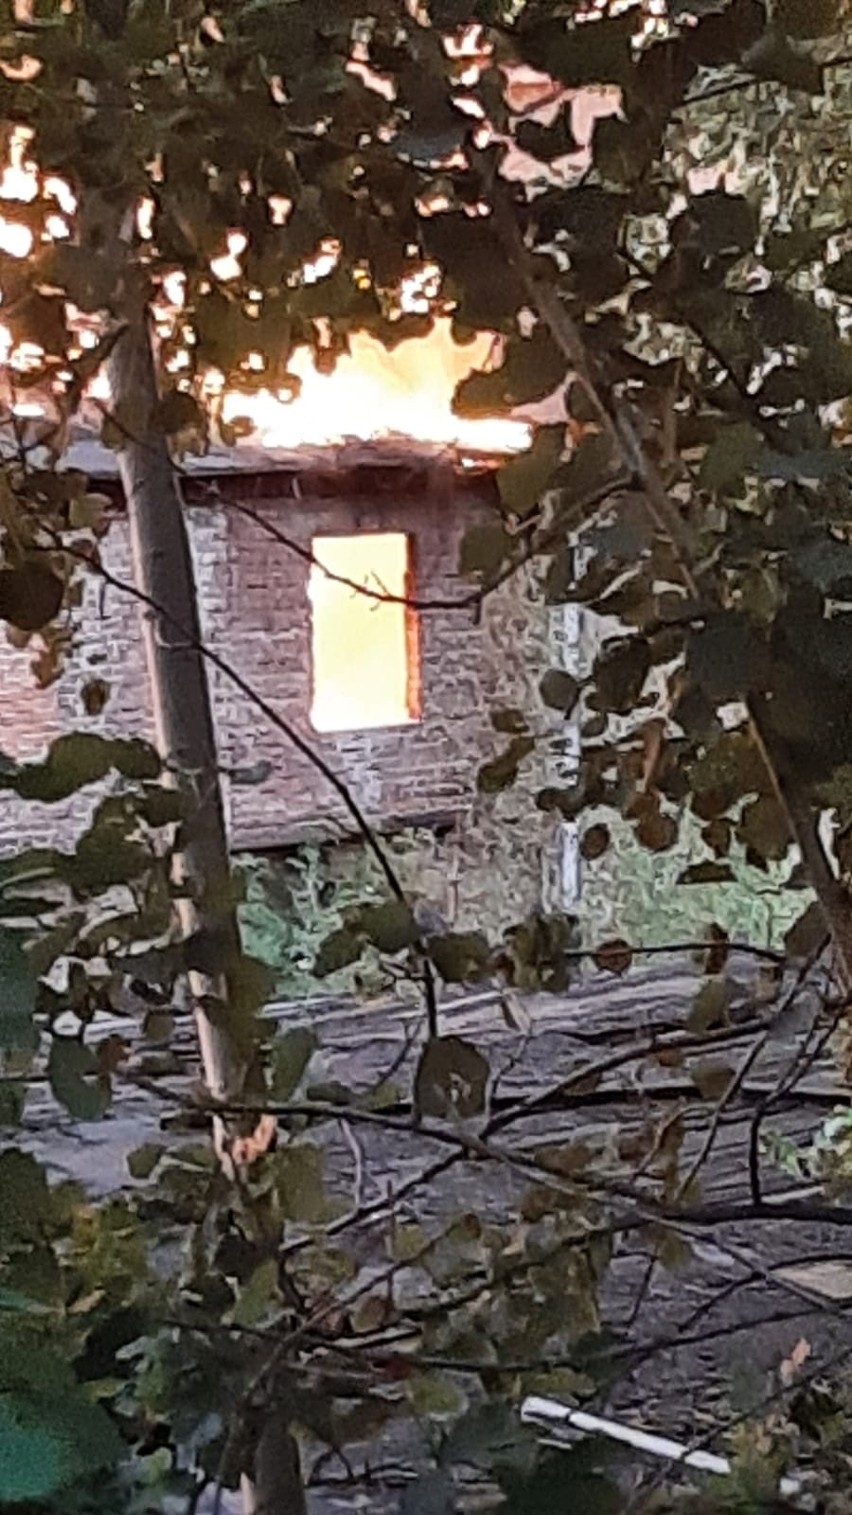 Pali się nieczynna cegielnia w Konradowie koło Głuchołaz. Obok jest hałda odpadów. Pożar gasi 9 jednostek straży